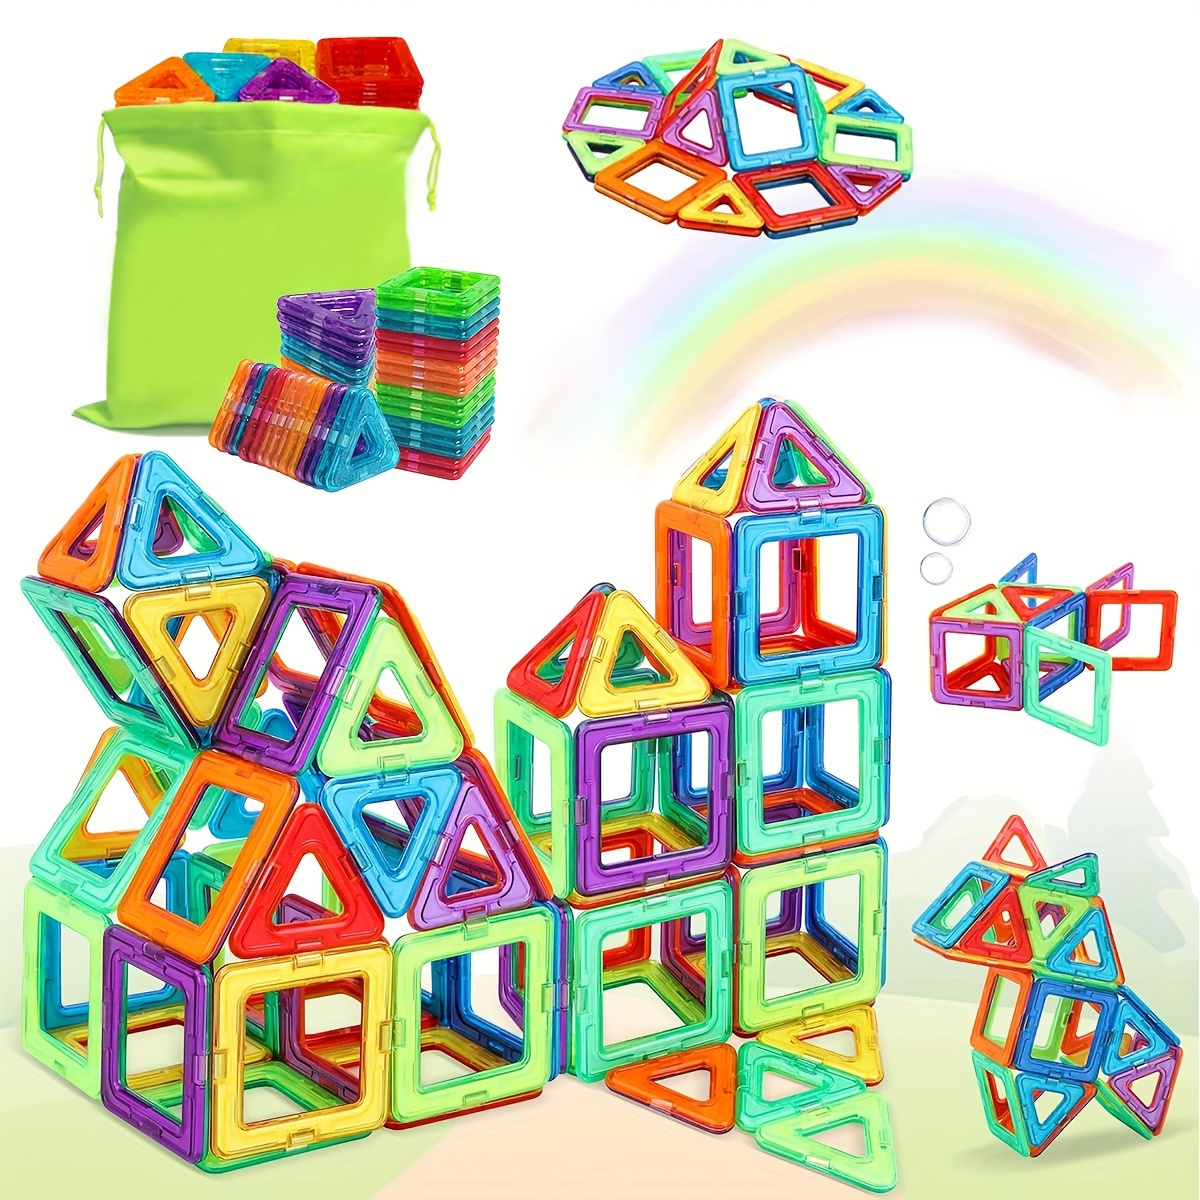 Blocs de construction magnétiques 40pc Construction Toys Set pour enfants  Jeu, Stem Créativité Aimants éducatifs Blocs de jouets pour garçons Filles  Age 3 4 5 6 7 Year O